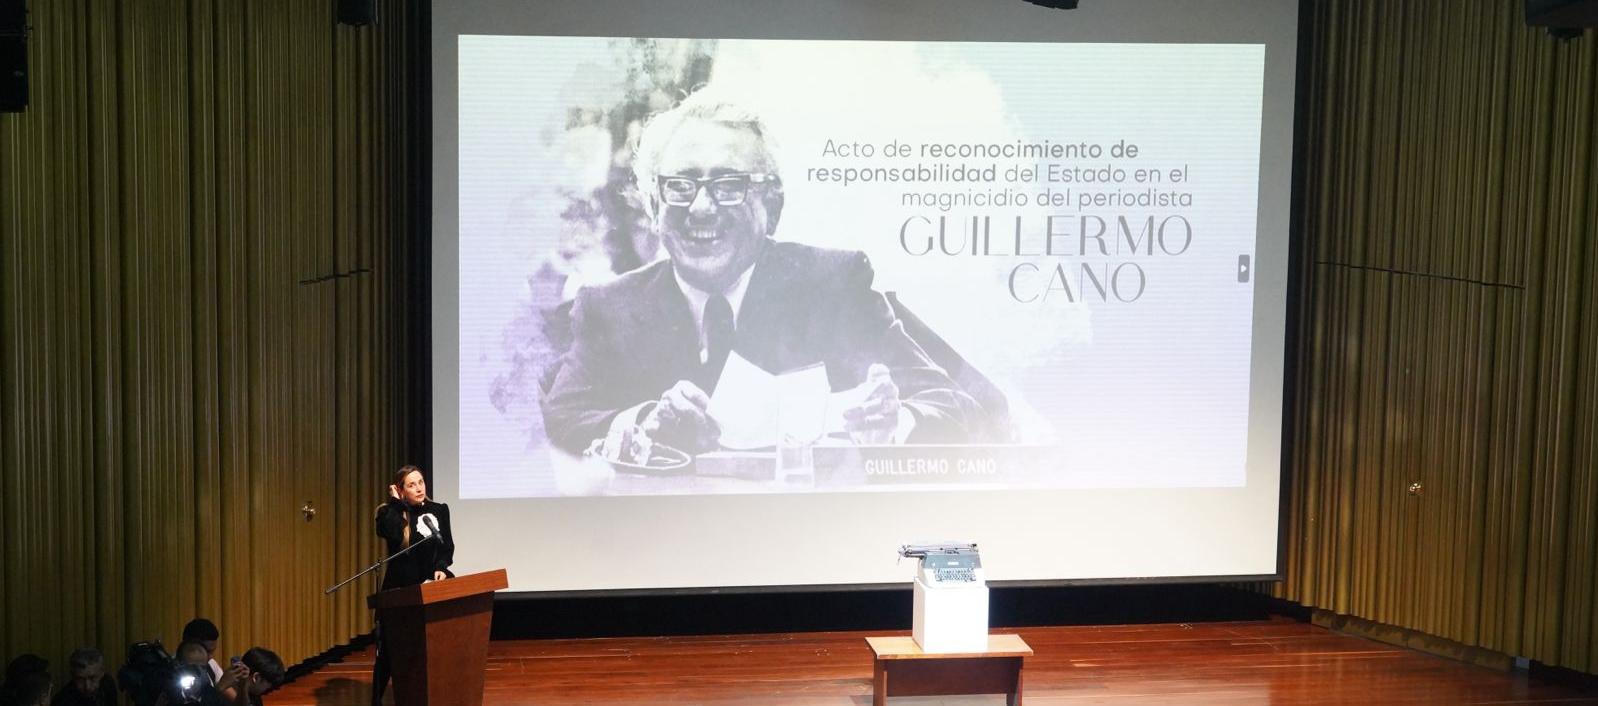 El homenaje a Guillermo Cano tuvo lugar el día que se conmemora el Día del Periodista.